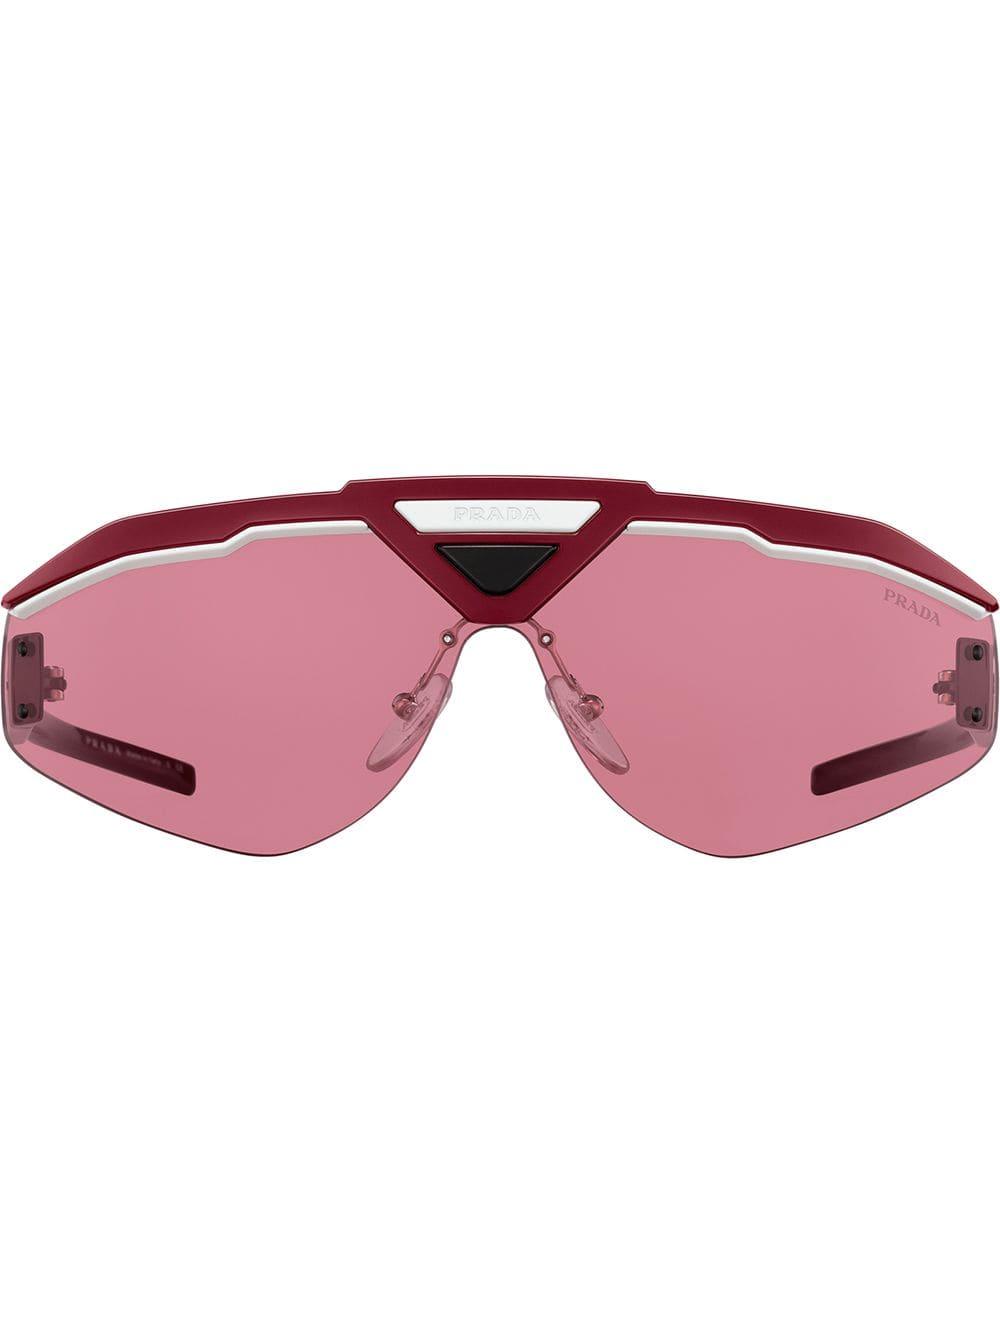 Prada Runway Sunglasses in Red for Men - Lyst